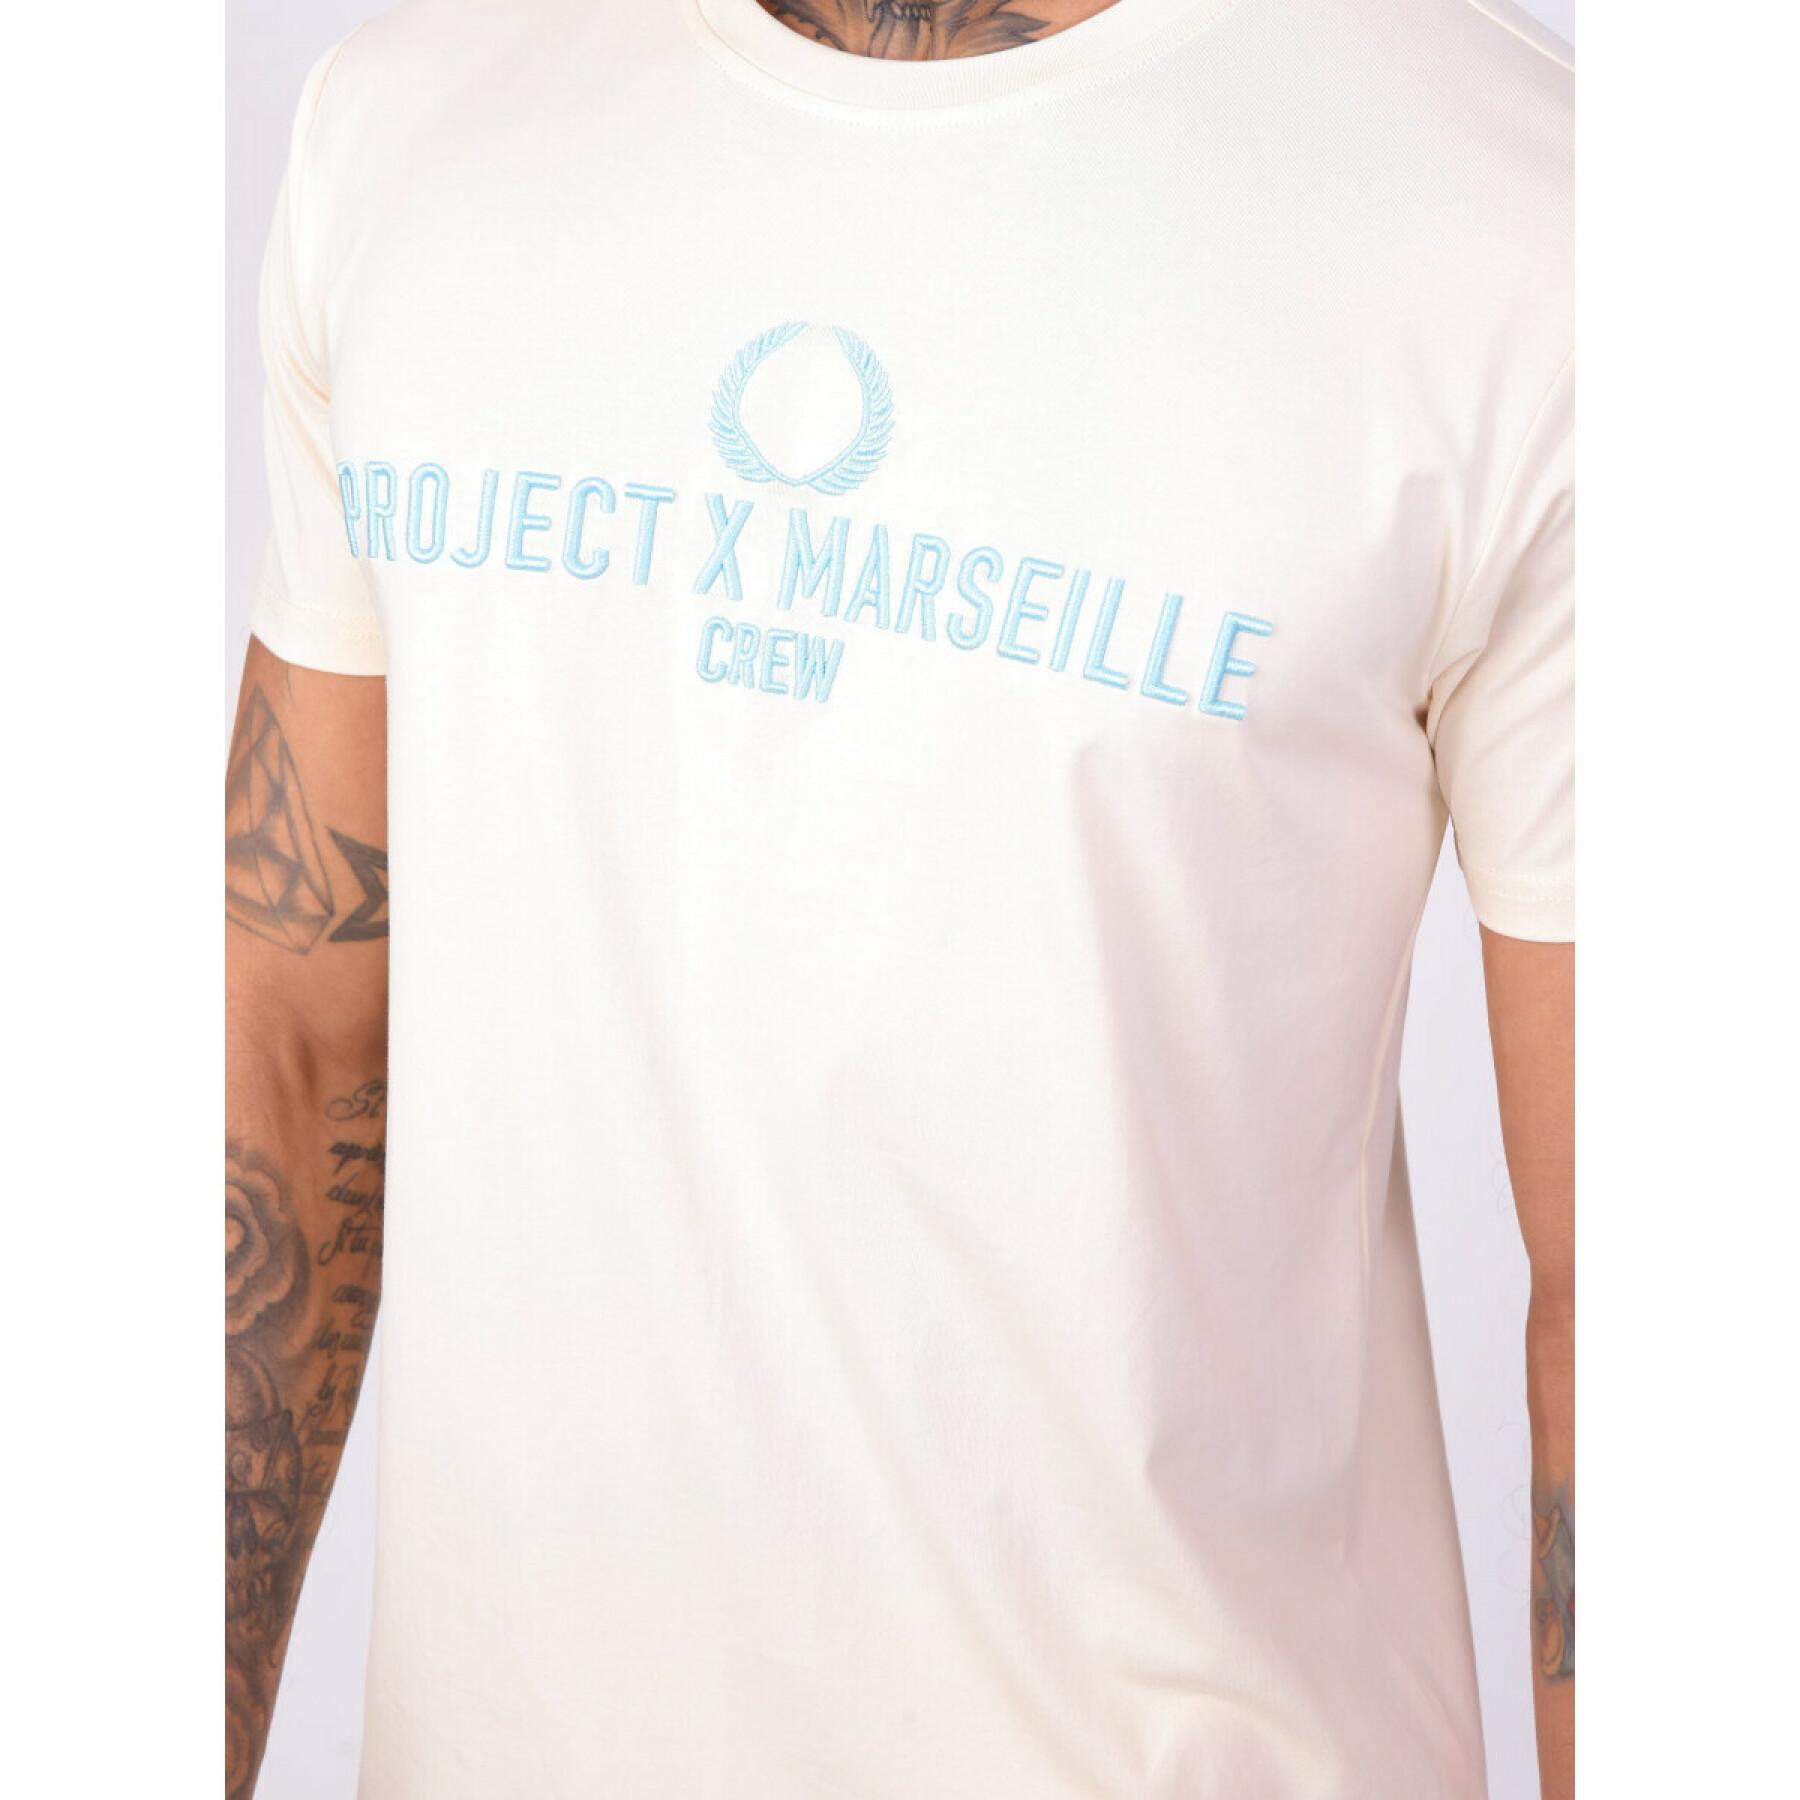 Logo-T-Shirt Project X Paris marseille crew